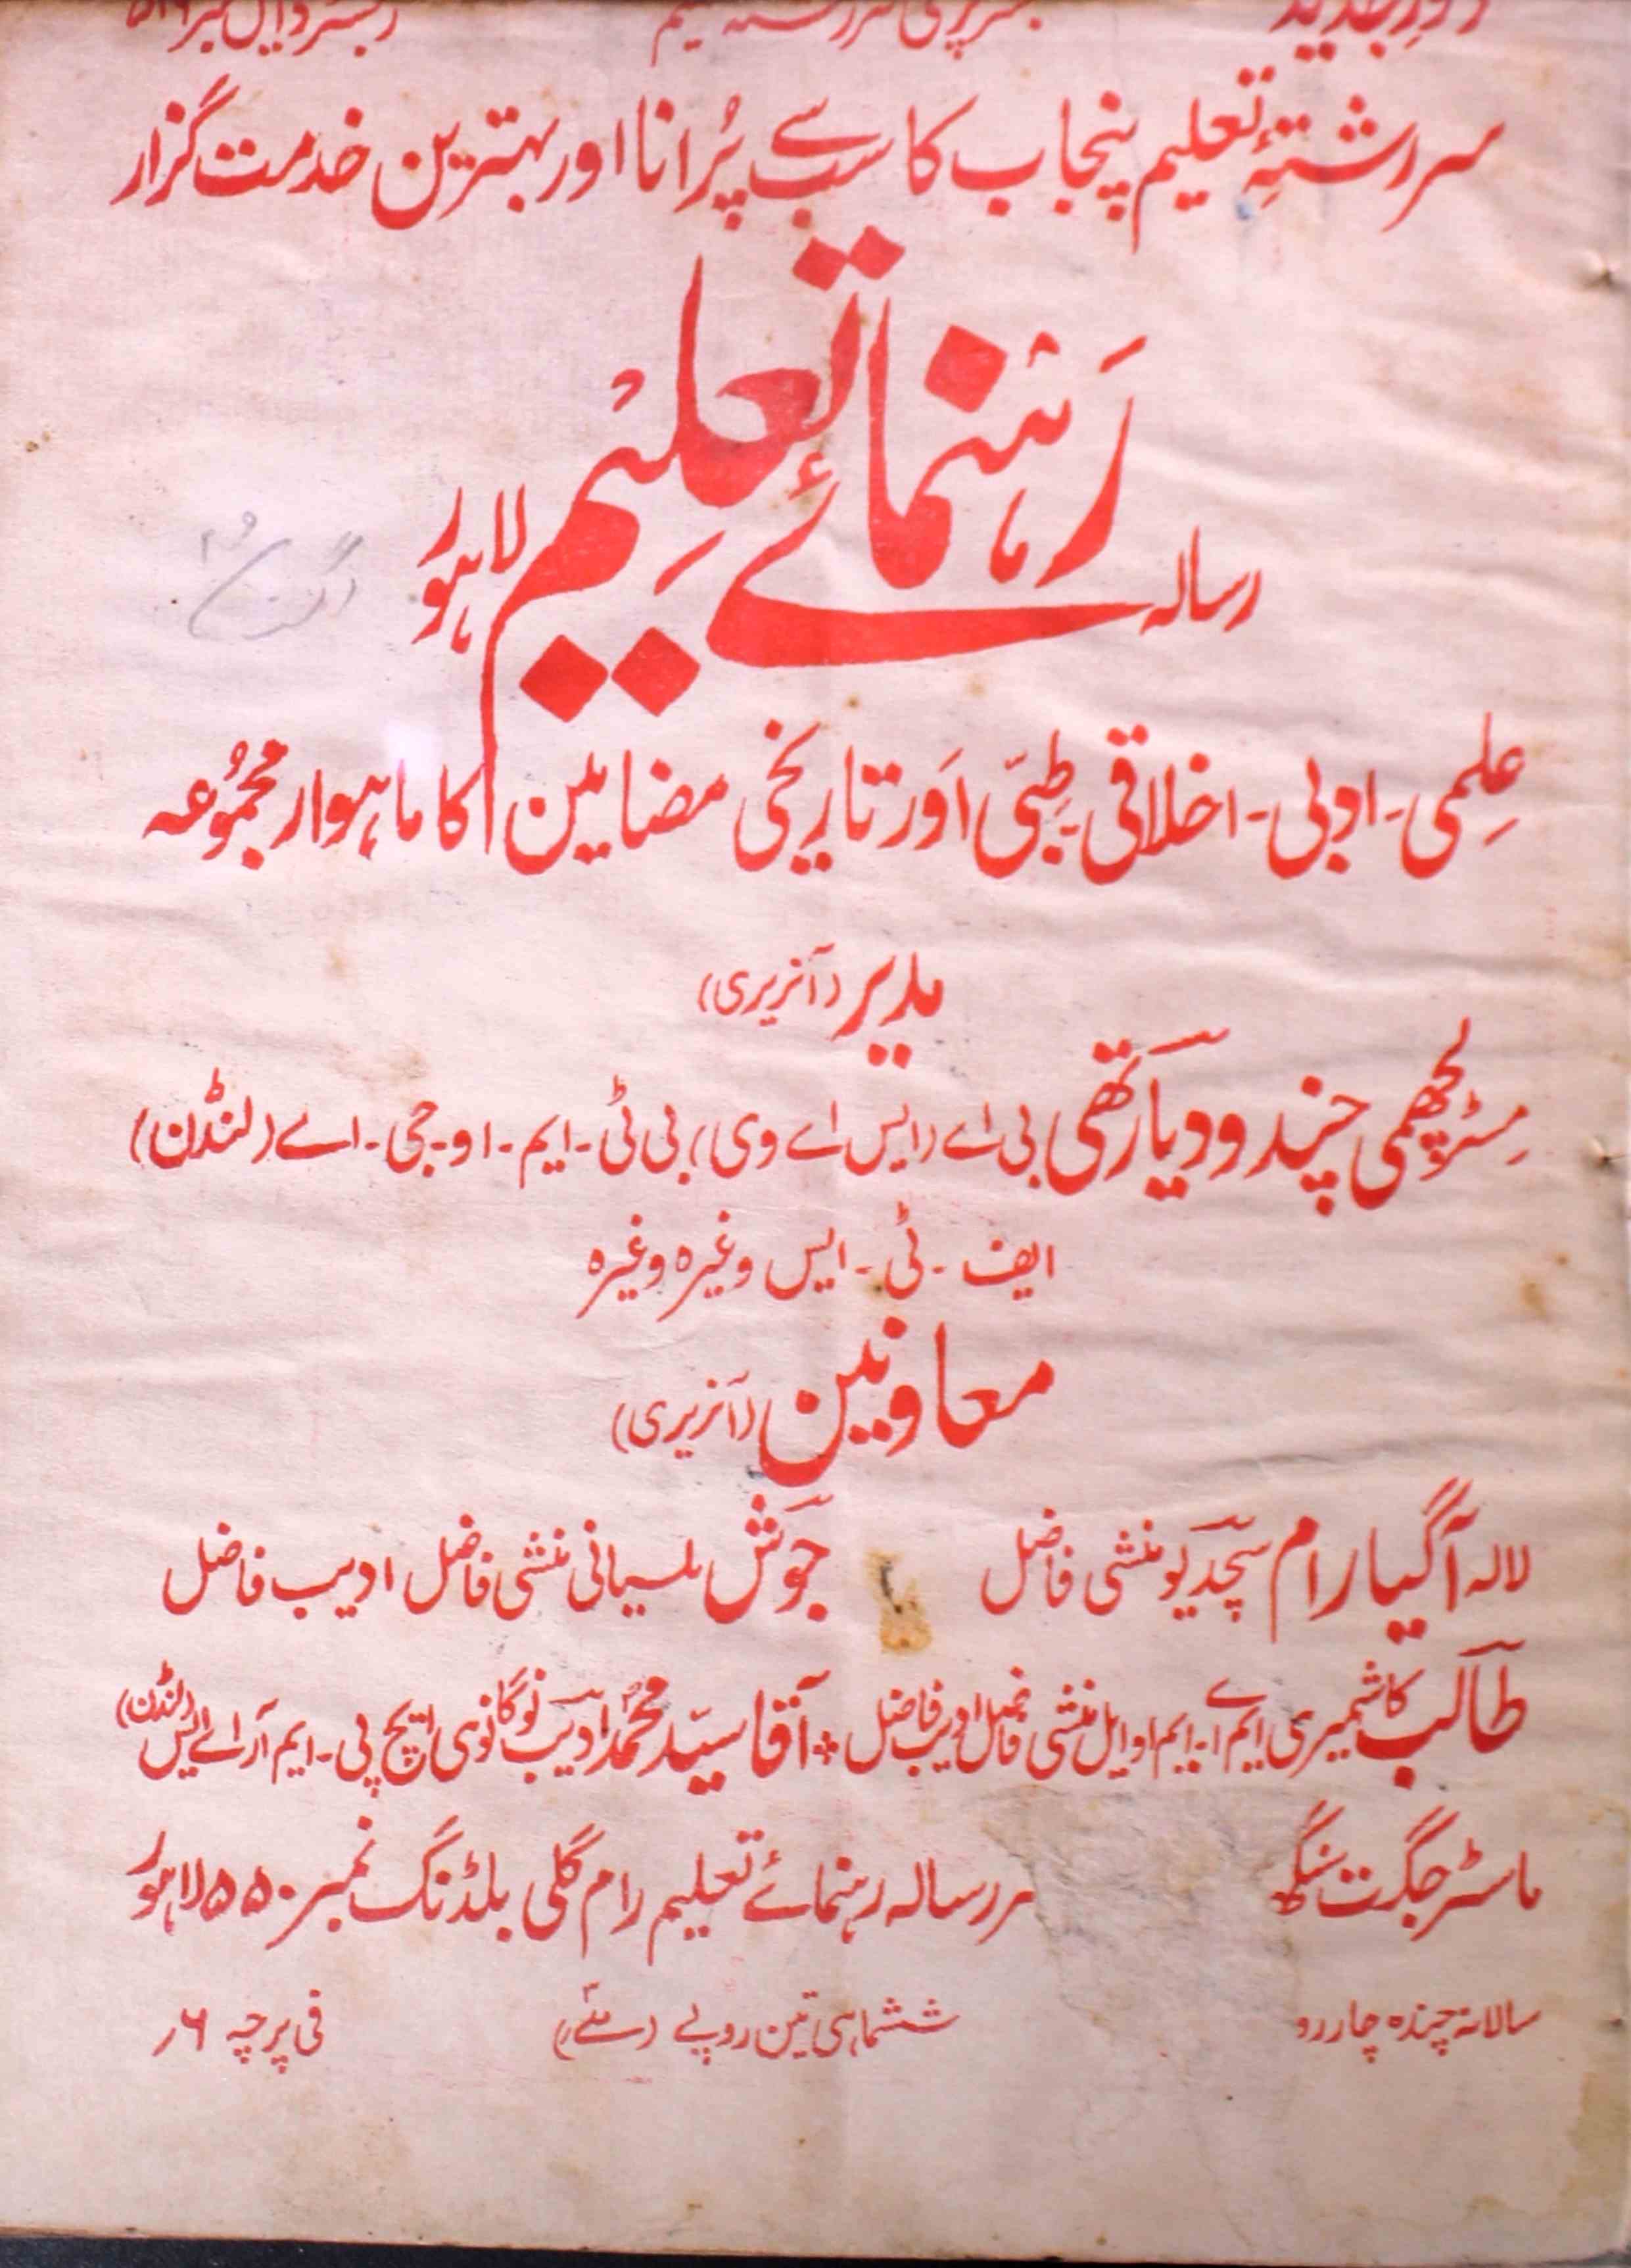 रहनुमा-ए-तालीम, लाहौर